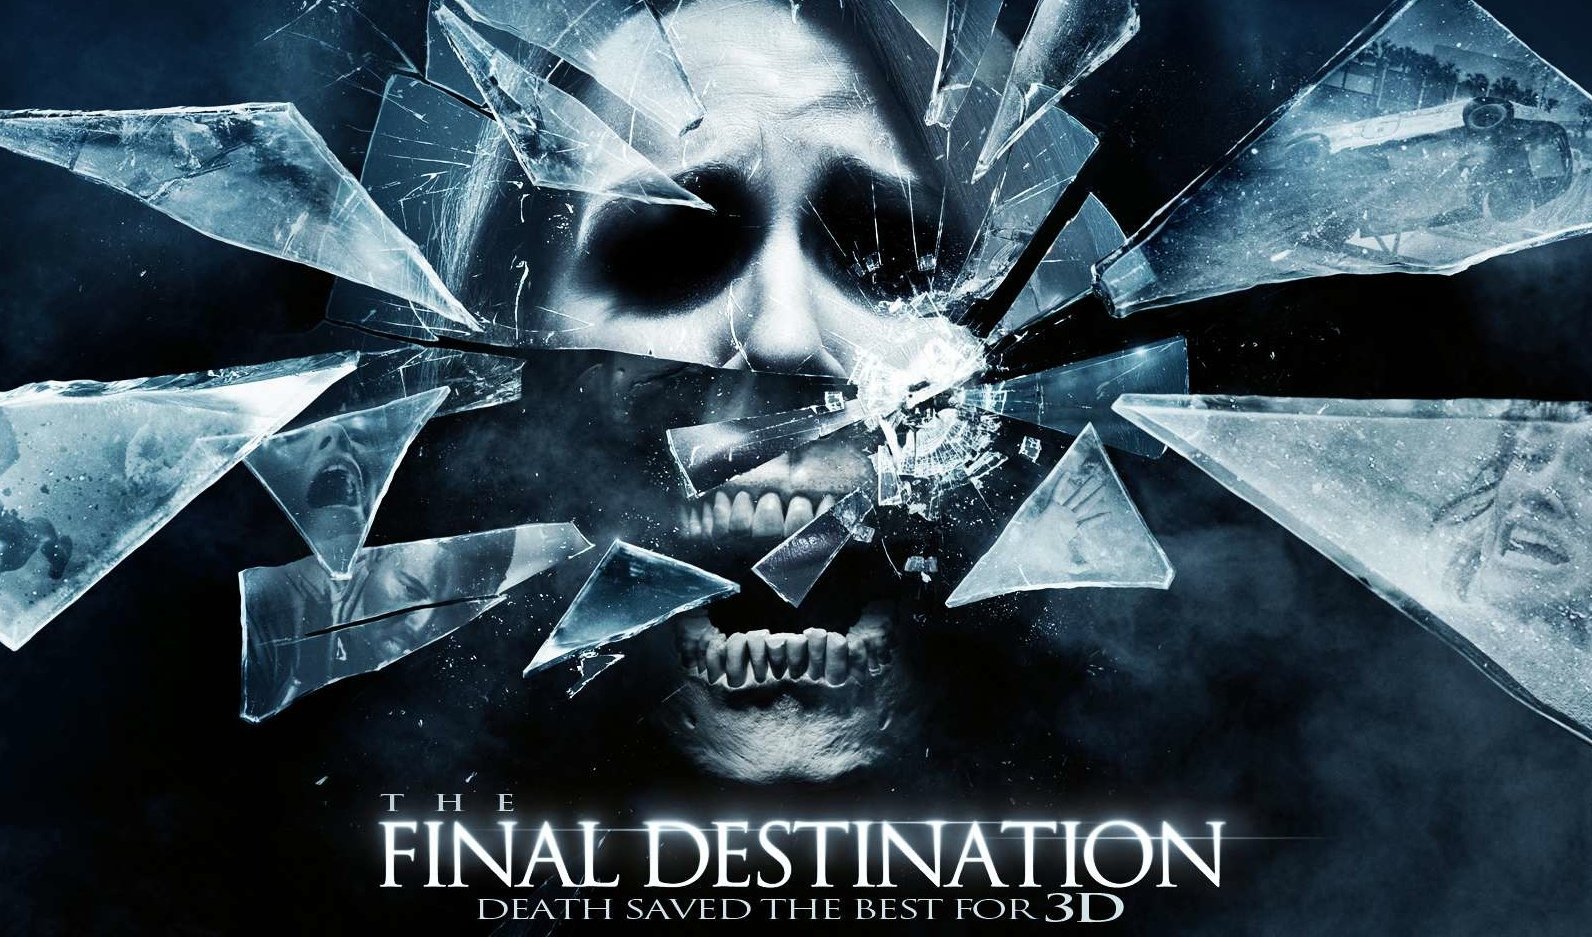 Final Destination - Điểm đến cuối cùng: Nghe có vẻ điêu nhưng nhiều cái chết được dựa trên sự kiện có thật đã xảy ra ngoài đời